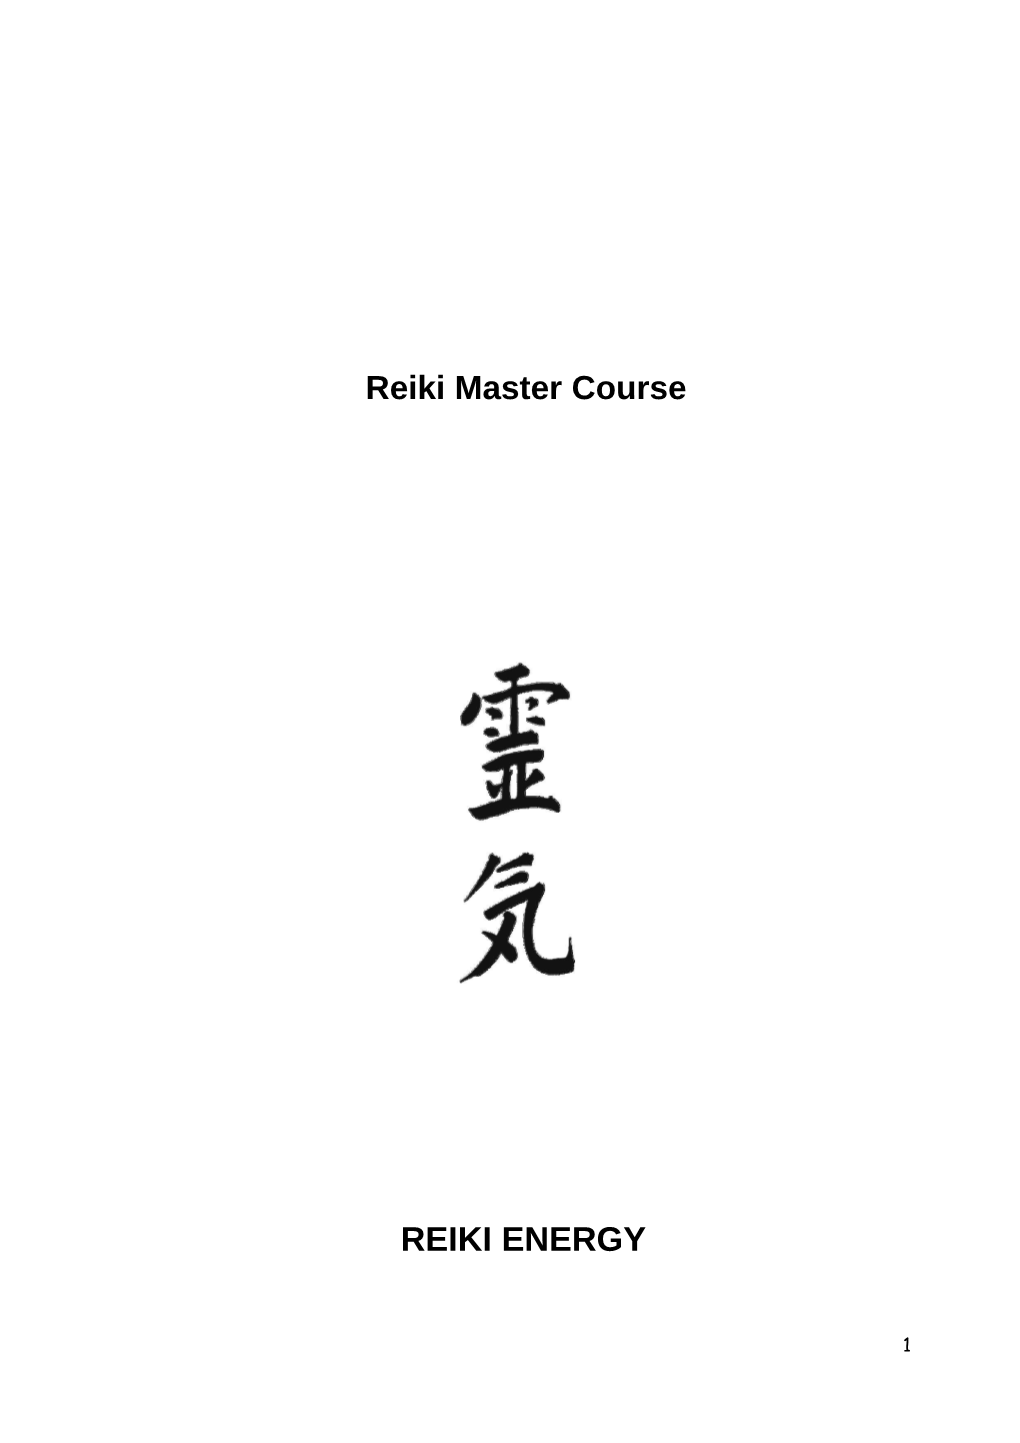 Reiki Master Course